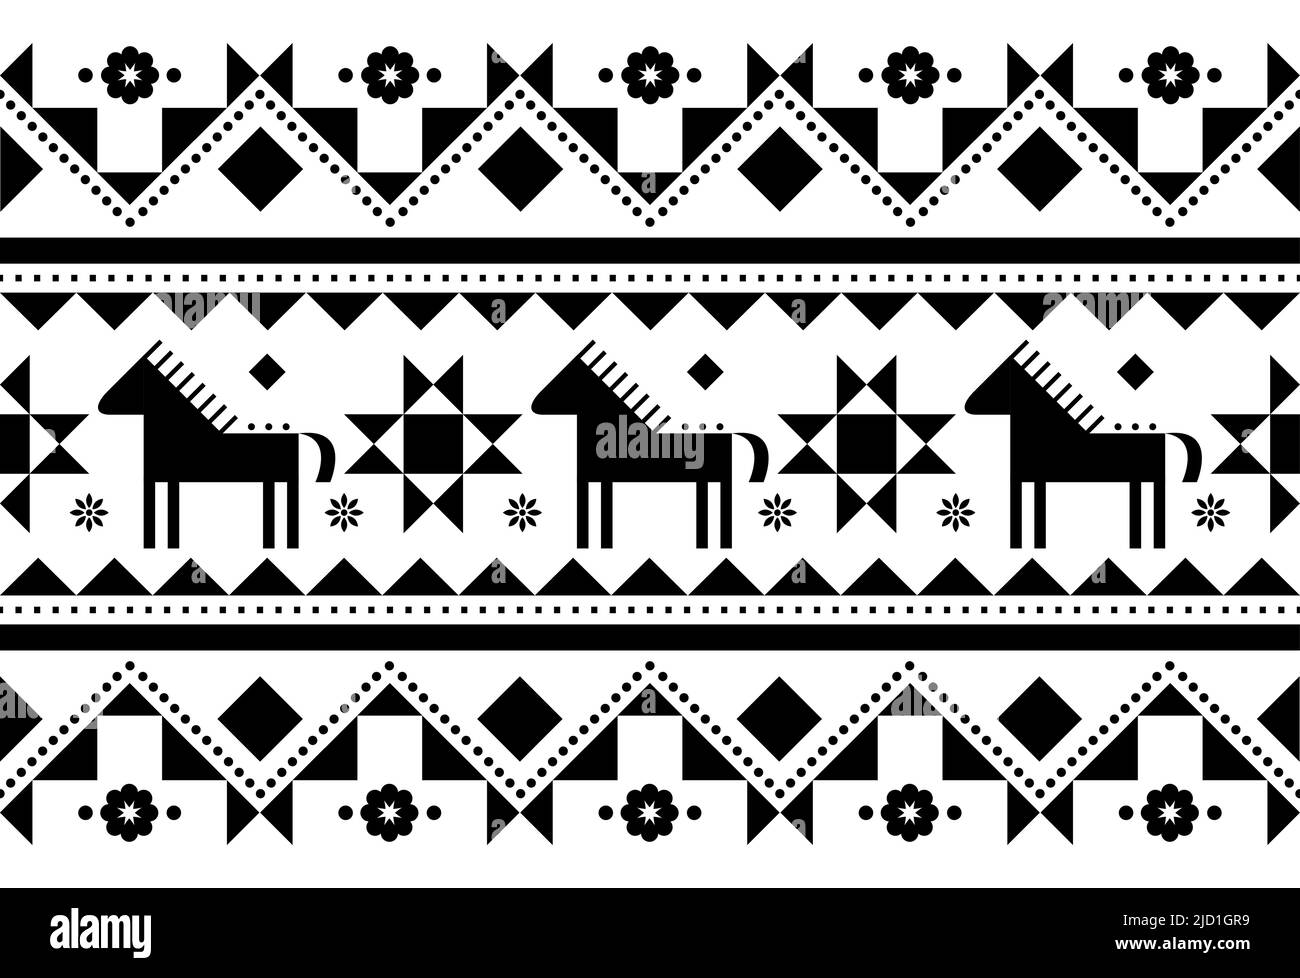 Pferde nahtlose Vektor-Muster - Ukrainisch Hutsul Pysanky (Ostereier) Volkskunst-Stil, geometrische schwarz-weiße Textil-oder farbischen Druck Stock Vektor